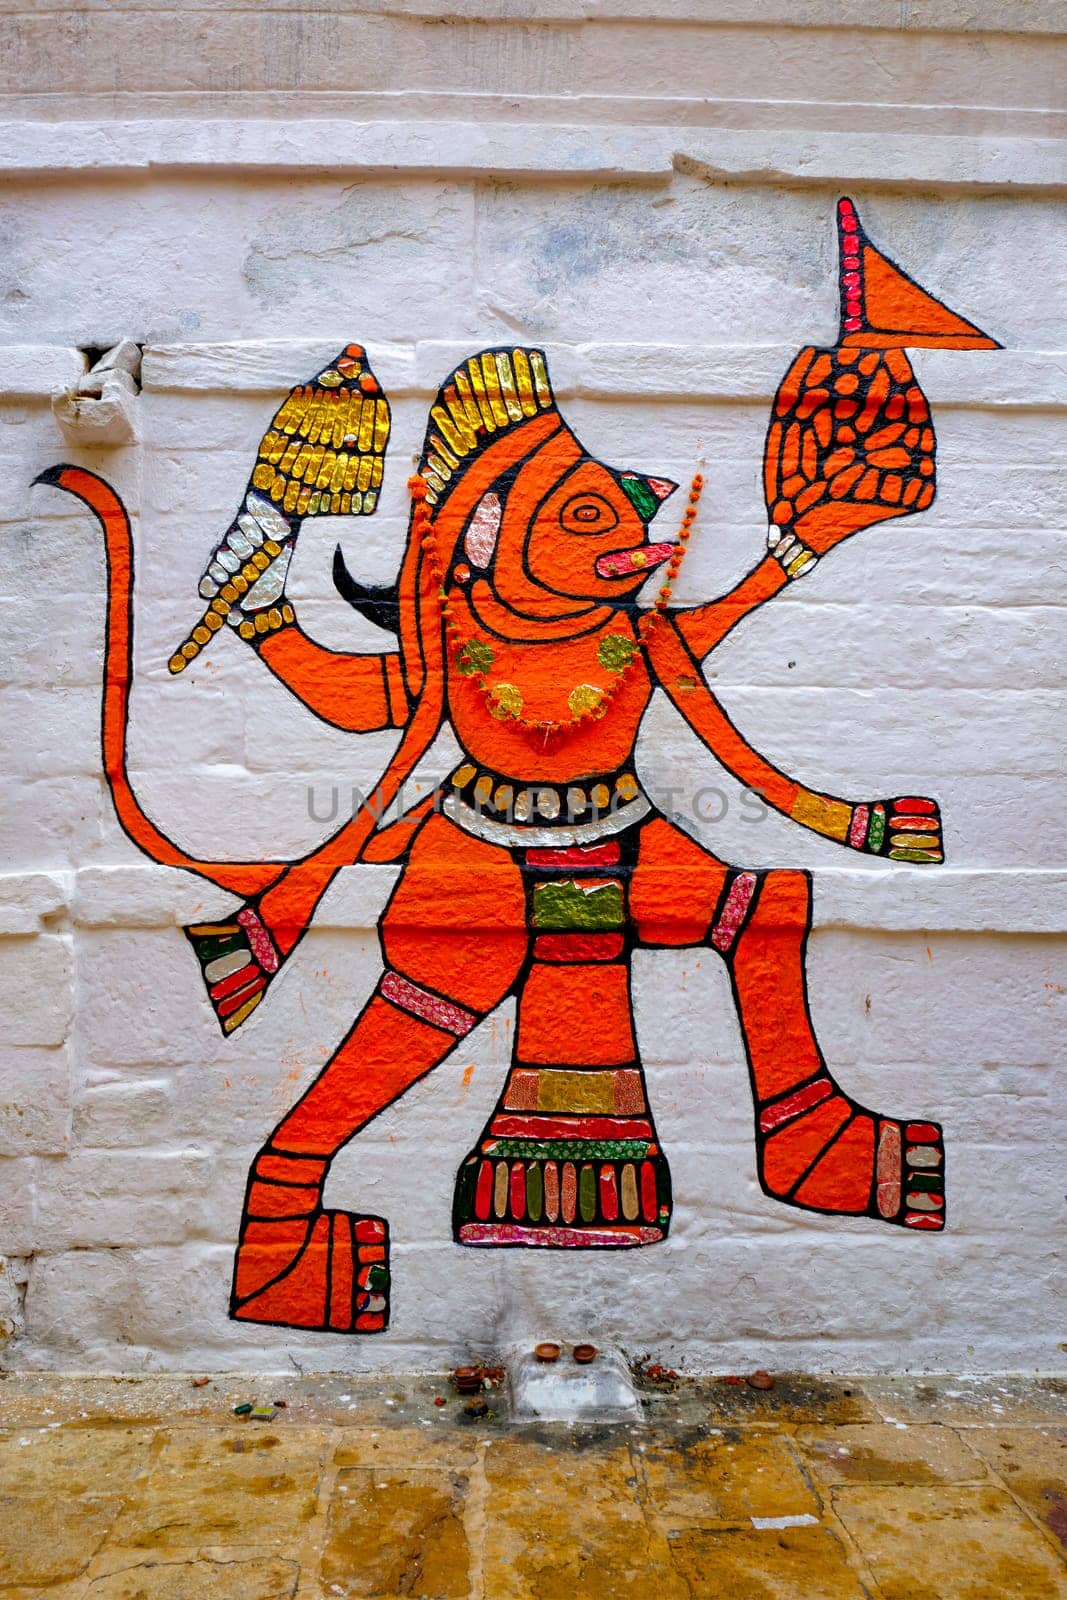 Hanuman Indian Hindu god image painted on wall. Jaiasalmer, Rajasthan, India by dimol